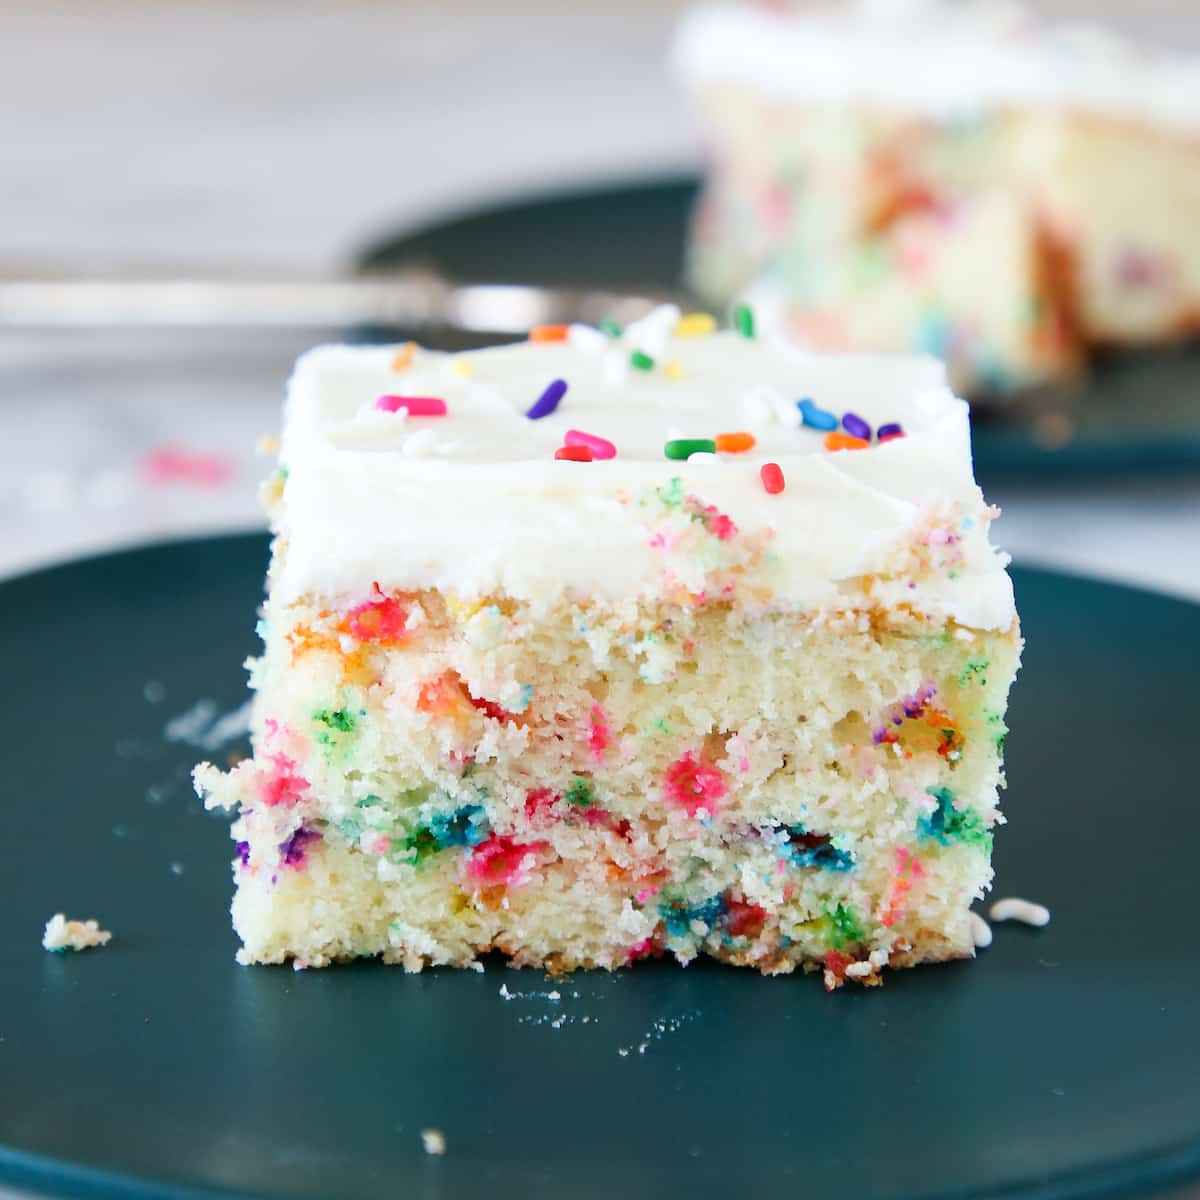 https://cheflindseyfarr.com/wp-content/uploads/2021/04/funfetti-sheet-cake-featured.jpg